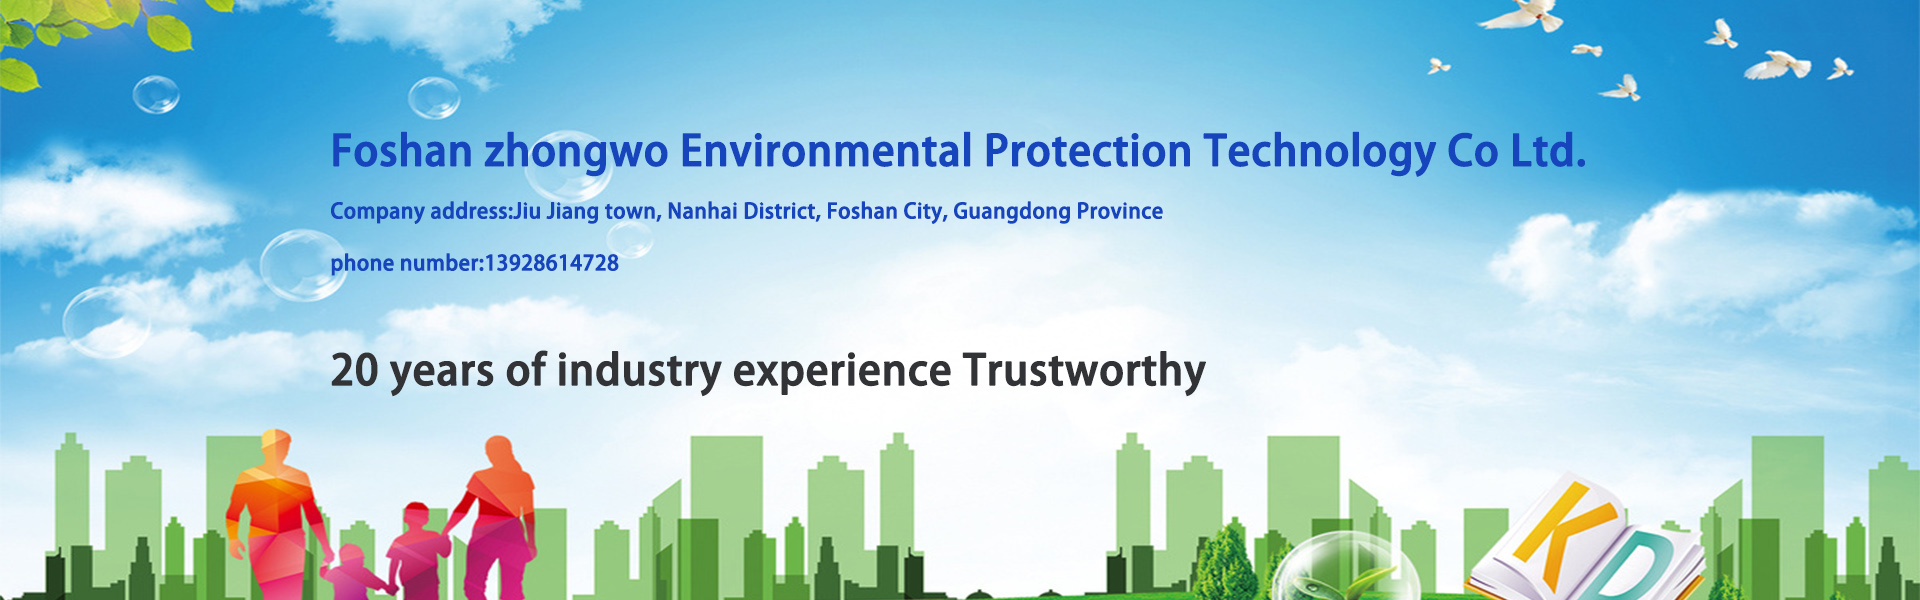 sprzęt do uzdatniania wody, sprzęt do oczyszczania wody, sprzęt do ochrony środowiska,Foshan zhongwo Environmental Protection Technology Co Ltd.